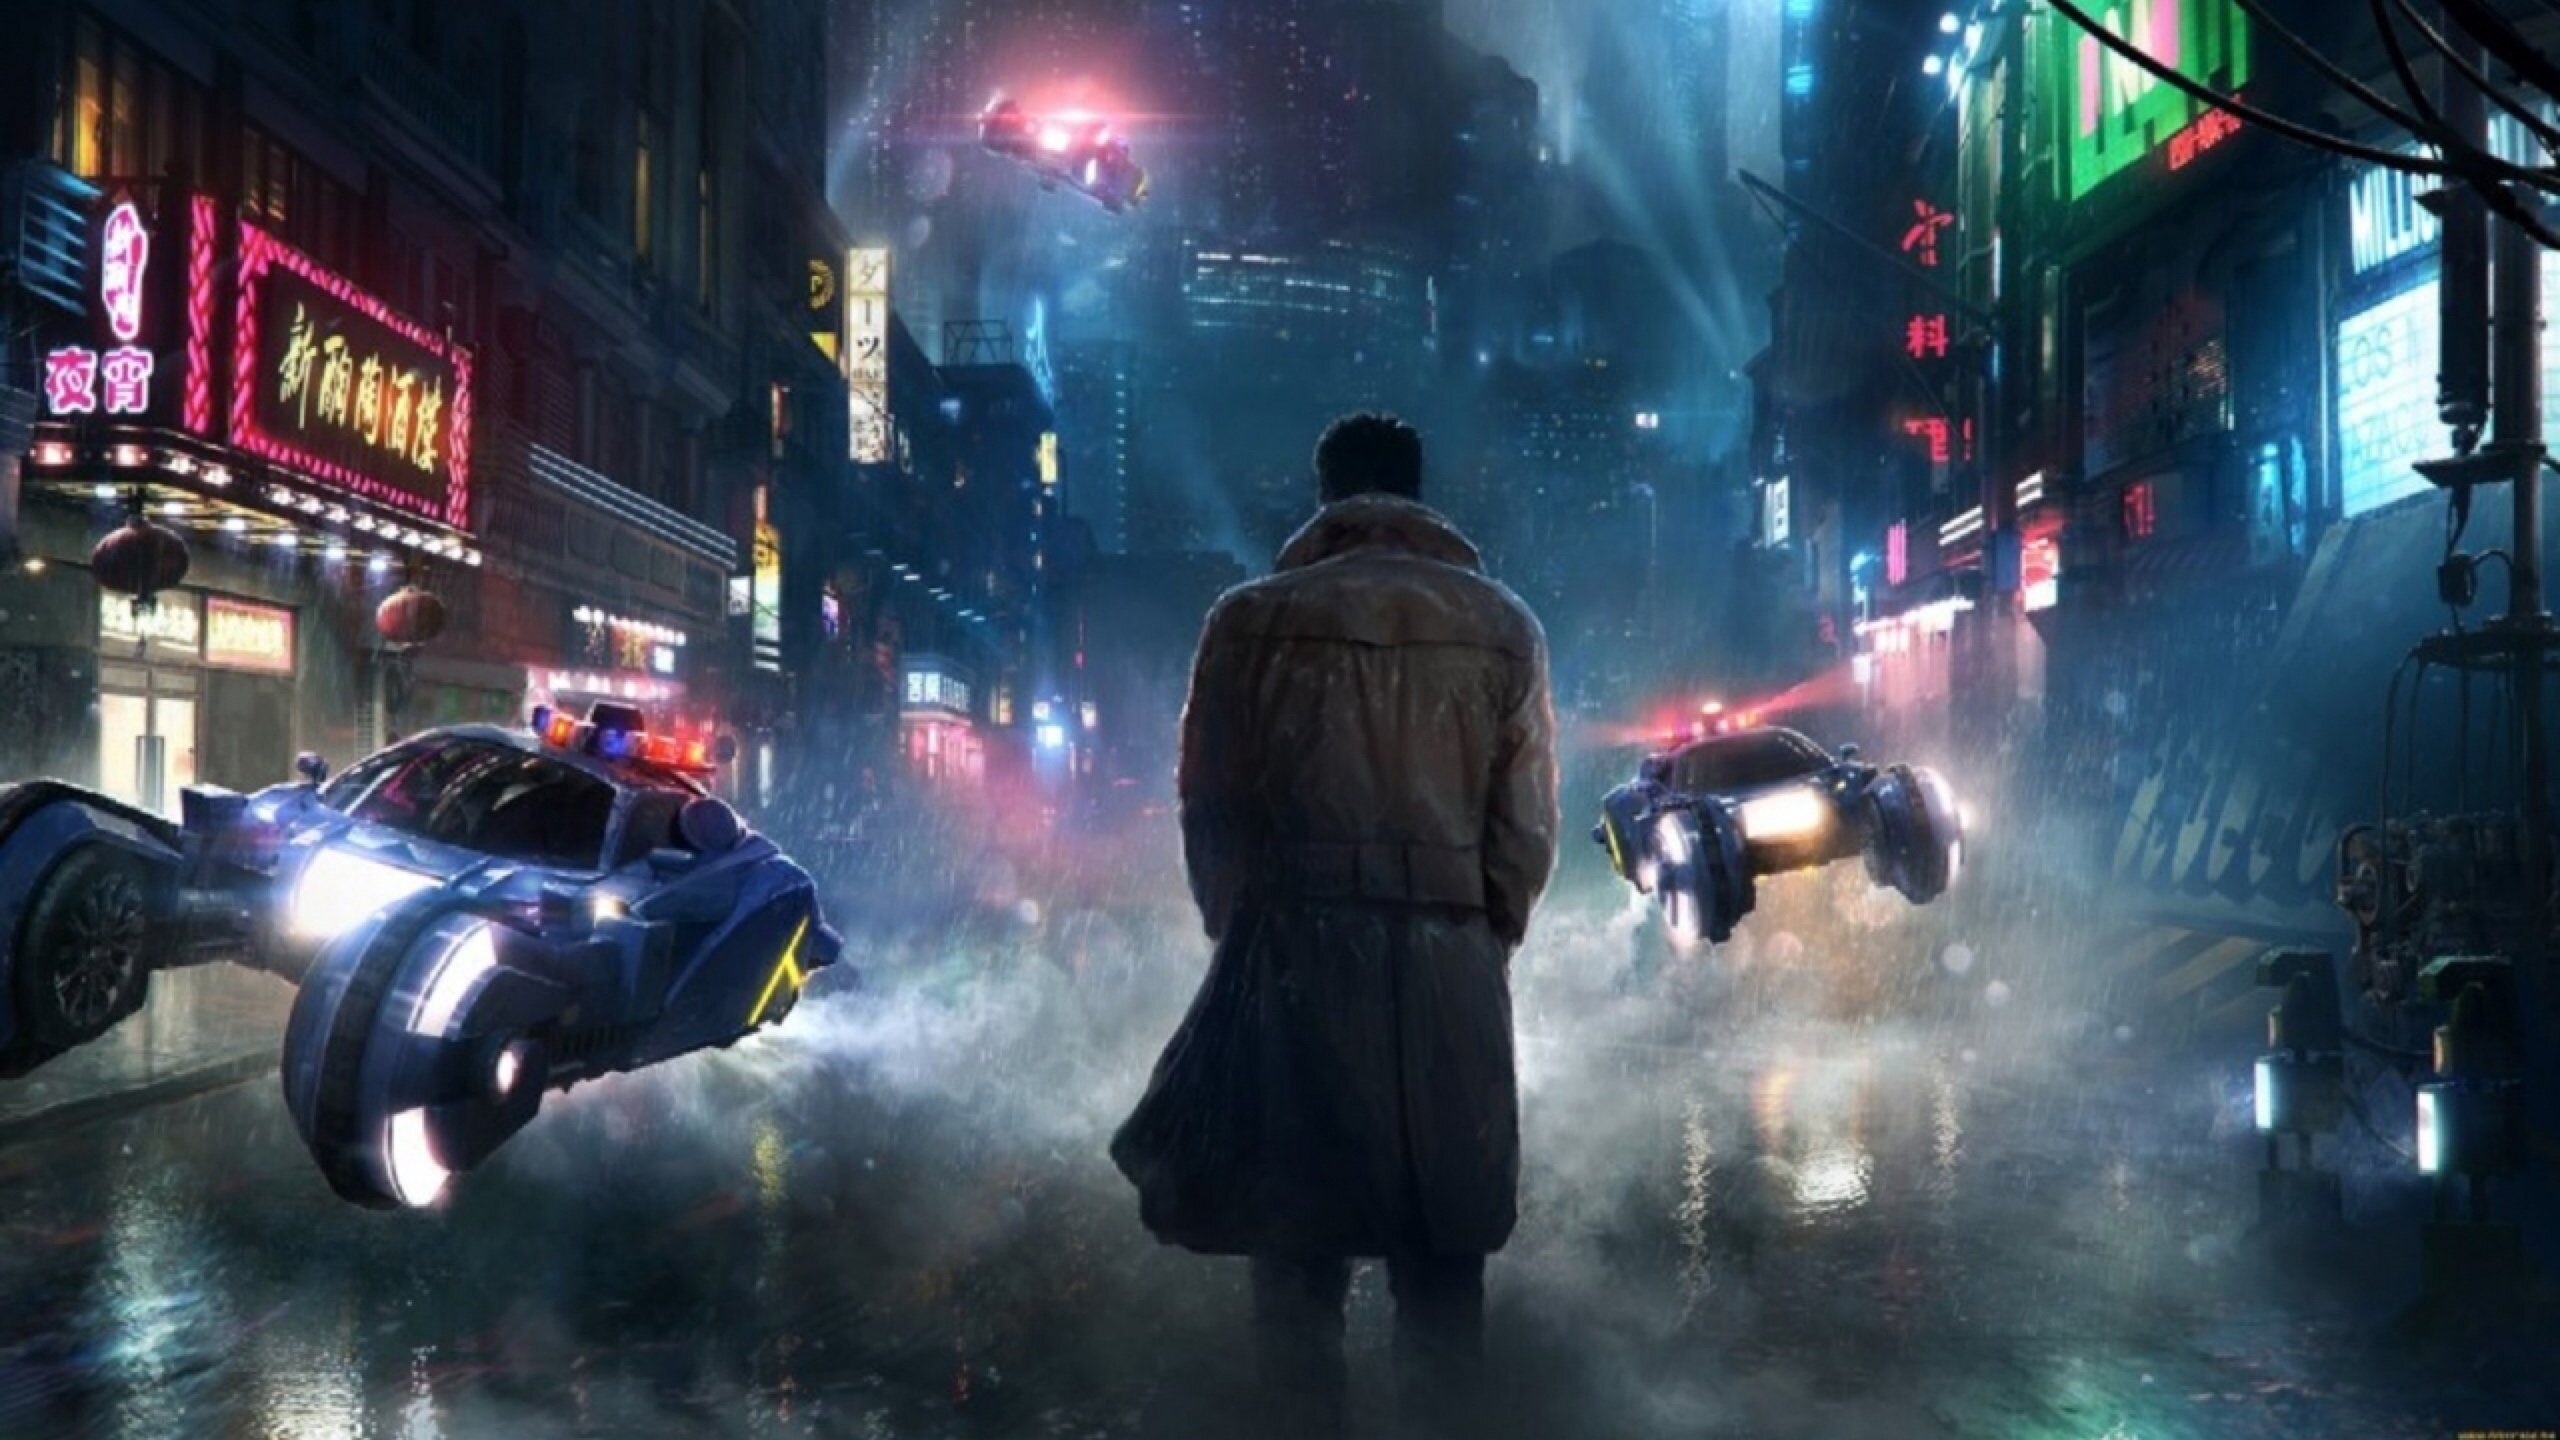 Săn lùng kẻ giả mạo cùng Game Blade Runner 2049: Replicant Pursuit